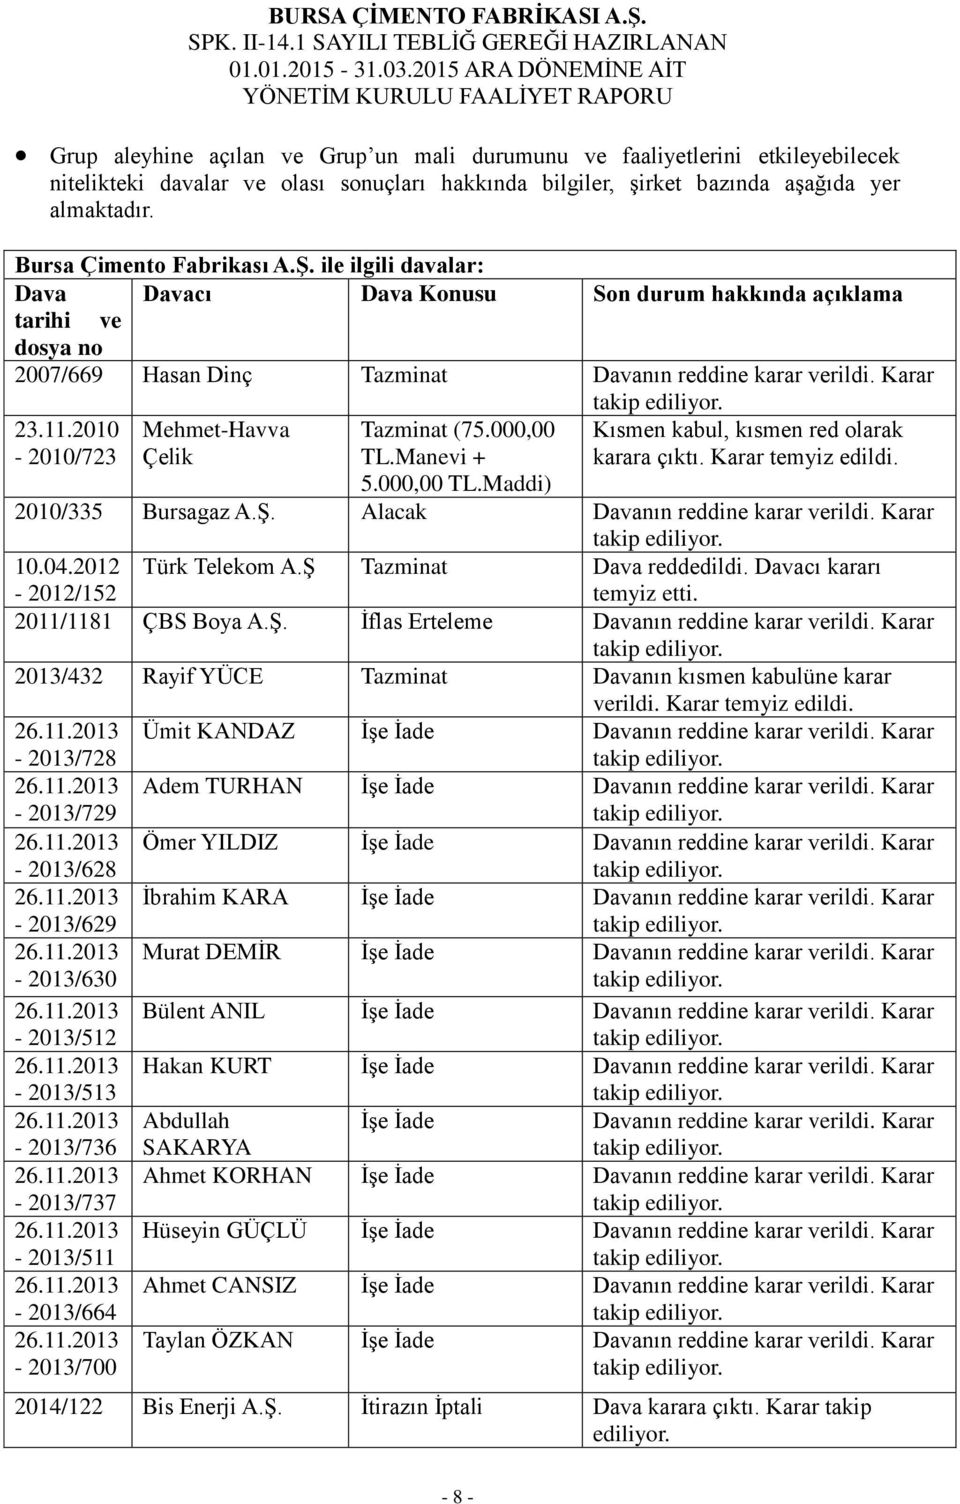 2010-2010/723 Mehmet-Havva Çelik Tazminat (75.000,00 TL.Manevi + Kısmen kabul, kısmen red olarak karara çıktı. Karar temyiz edildi. 5.000,00 TL.Maddi) 2010/335 Bursagaz A.Ş.